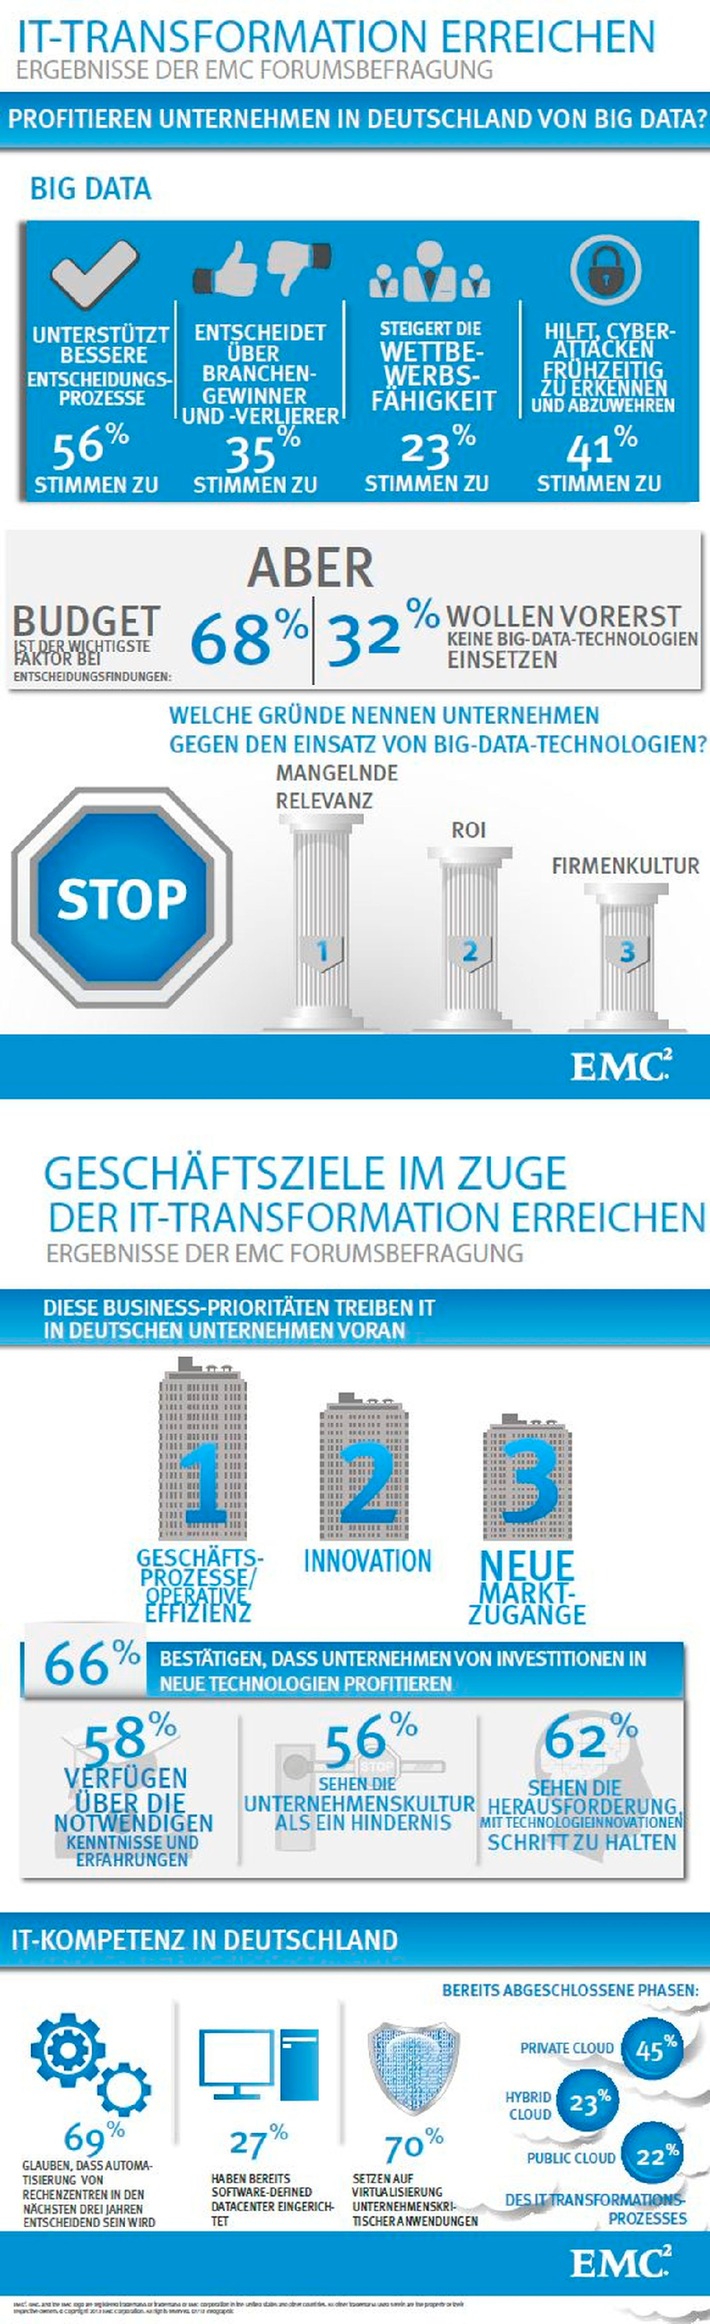 EMC Umfrage: Big Data setzt sich als Trend in deutschen Unternehmen durch (BILD)